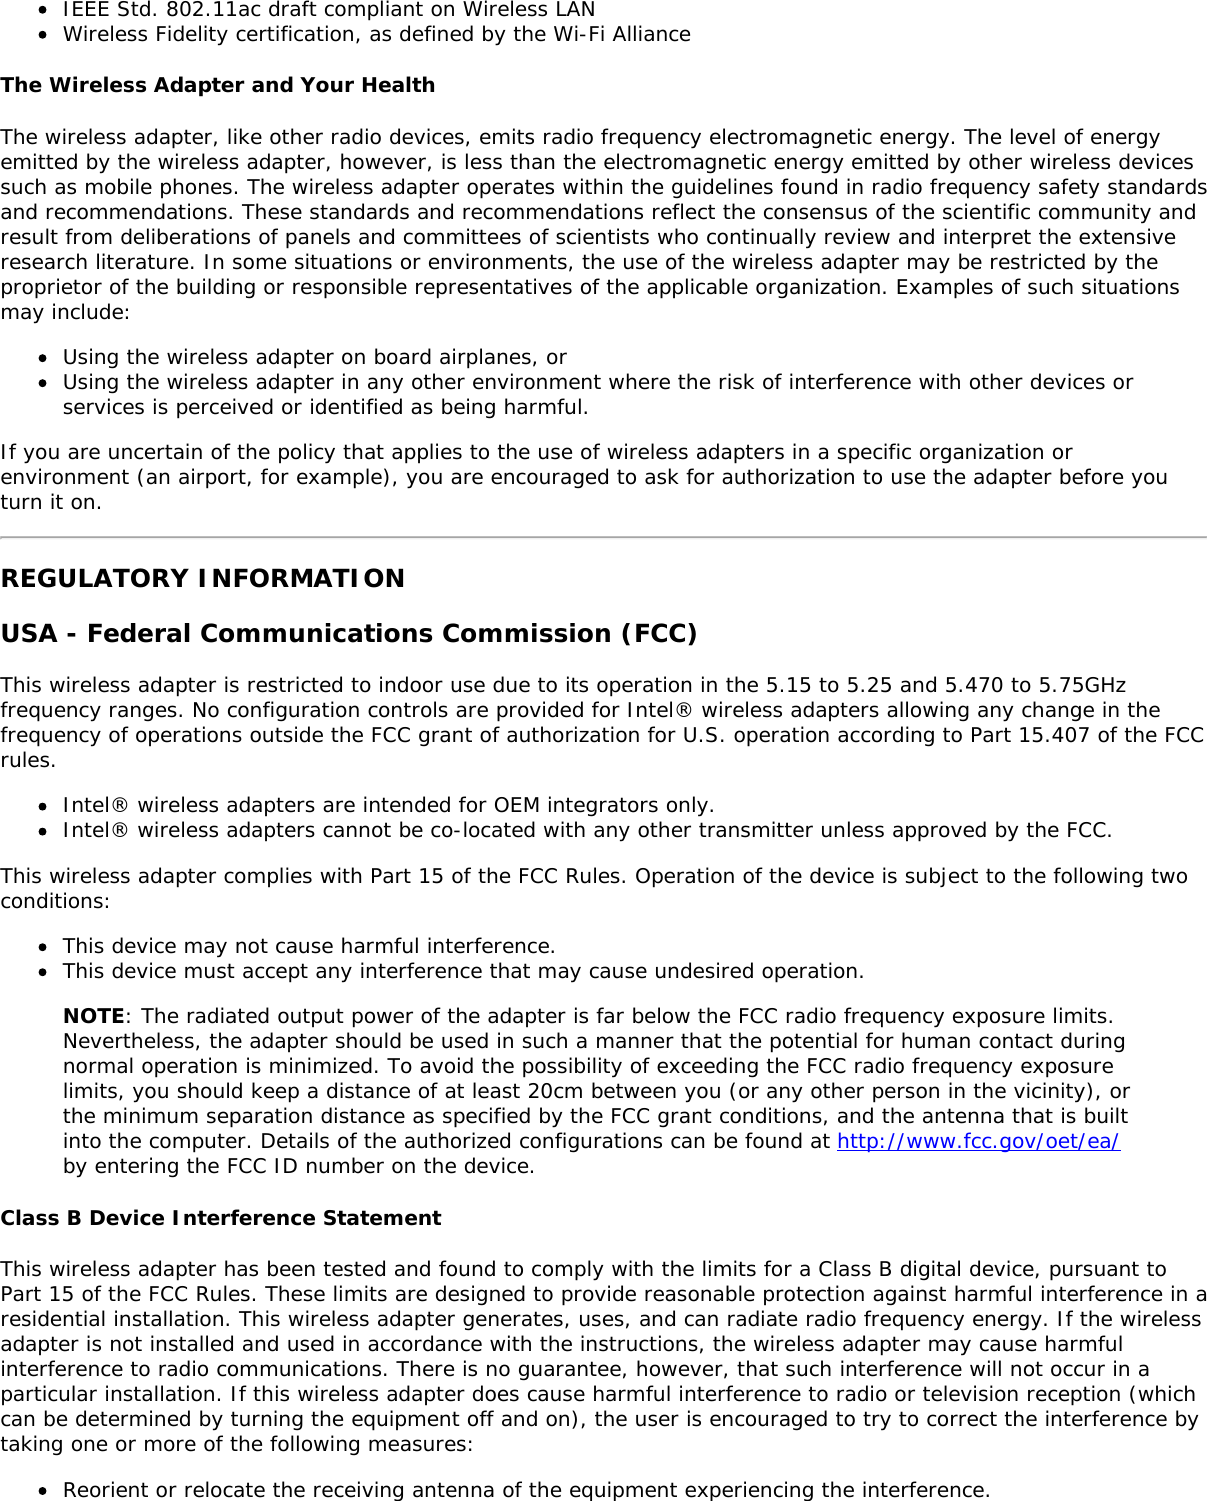 Page 15 of Hewlett Packard Enterprise EL3009260 Wifi/BT Module User Manual Intel     WiFi Adapter Information Guide